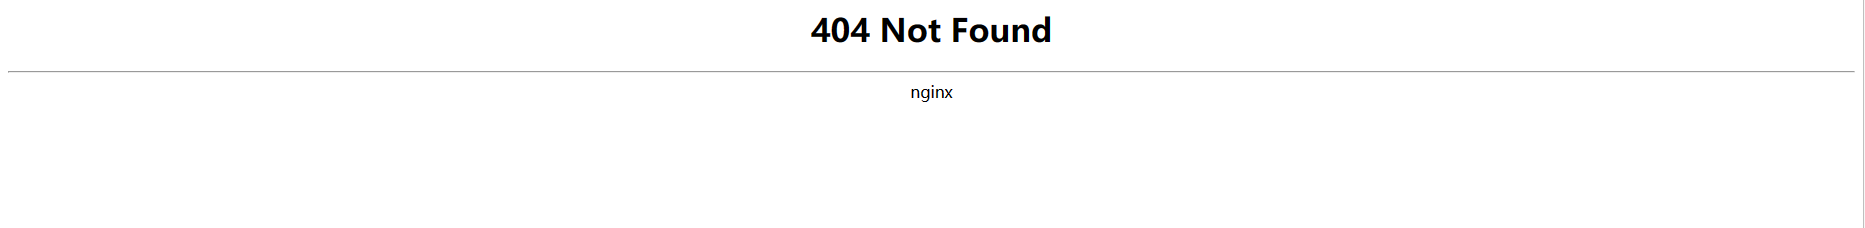 小狐狸ChatGPT web站点打不开404错误 500错误解决方法和小程序审核问题-大鹏源码网